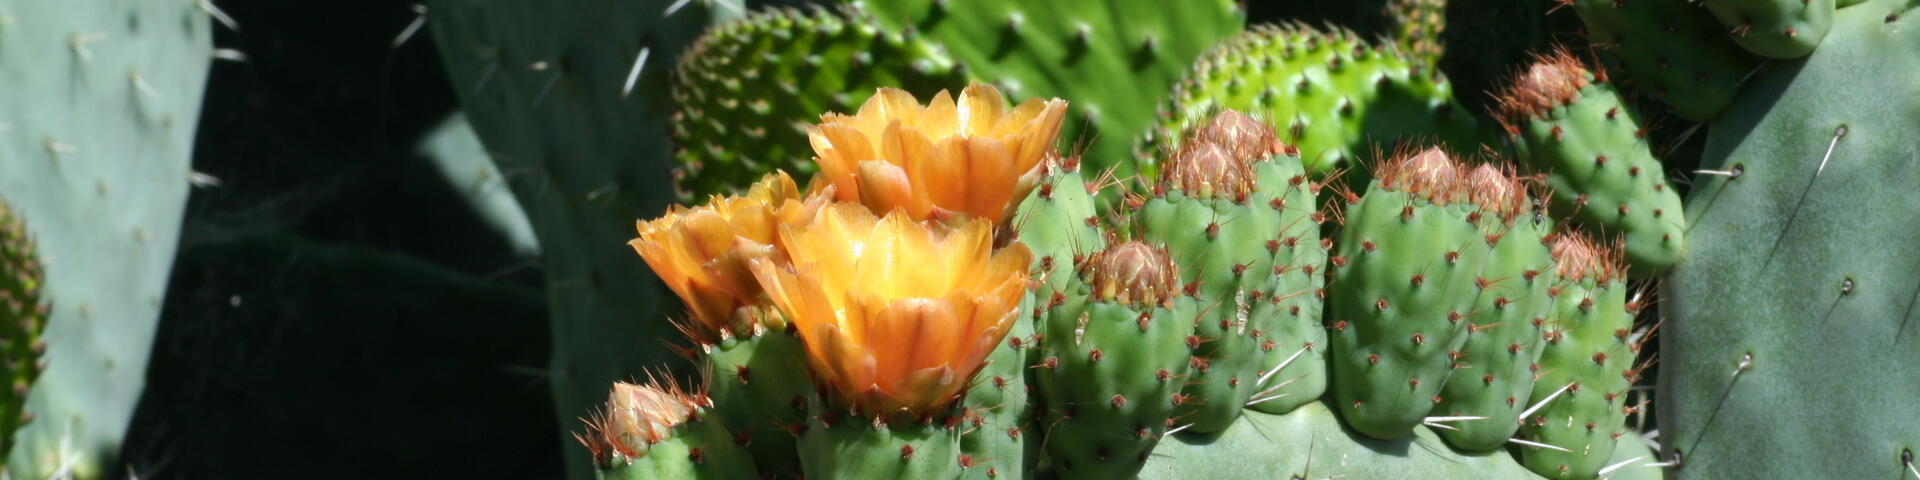 Cactus de andalucia